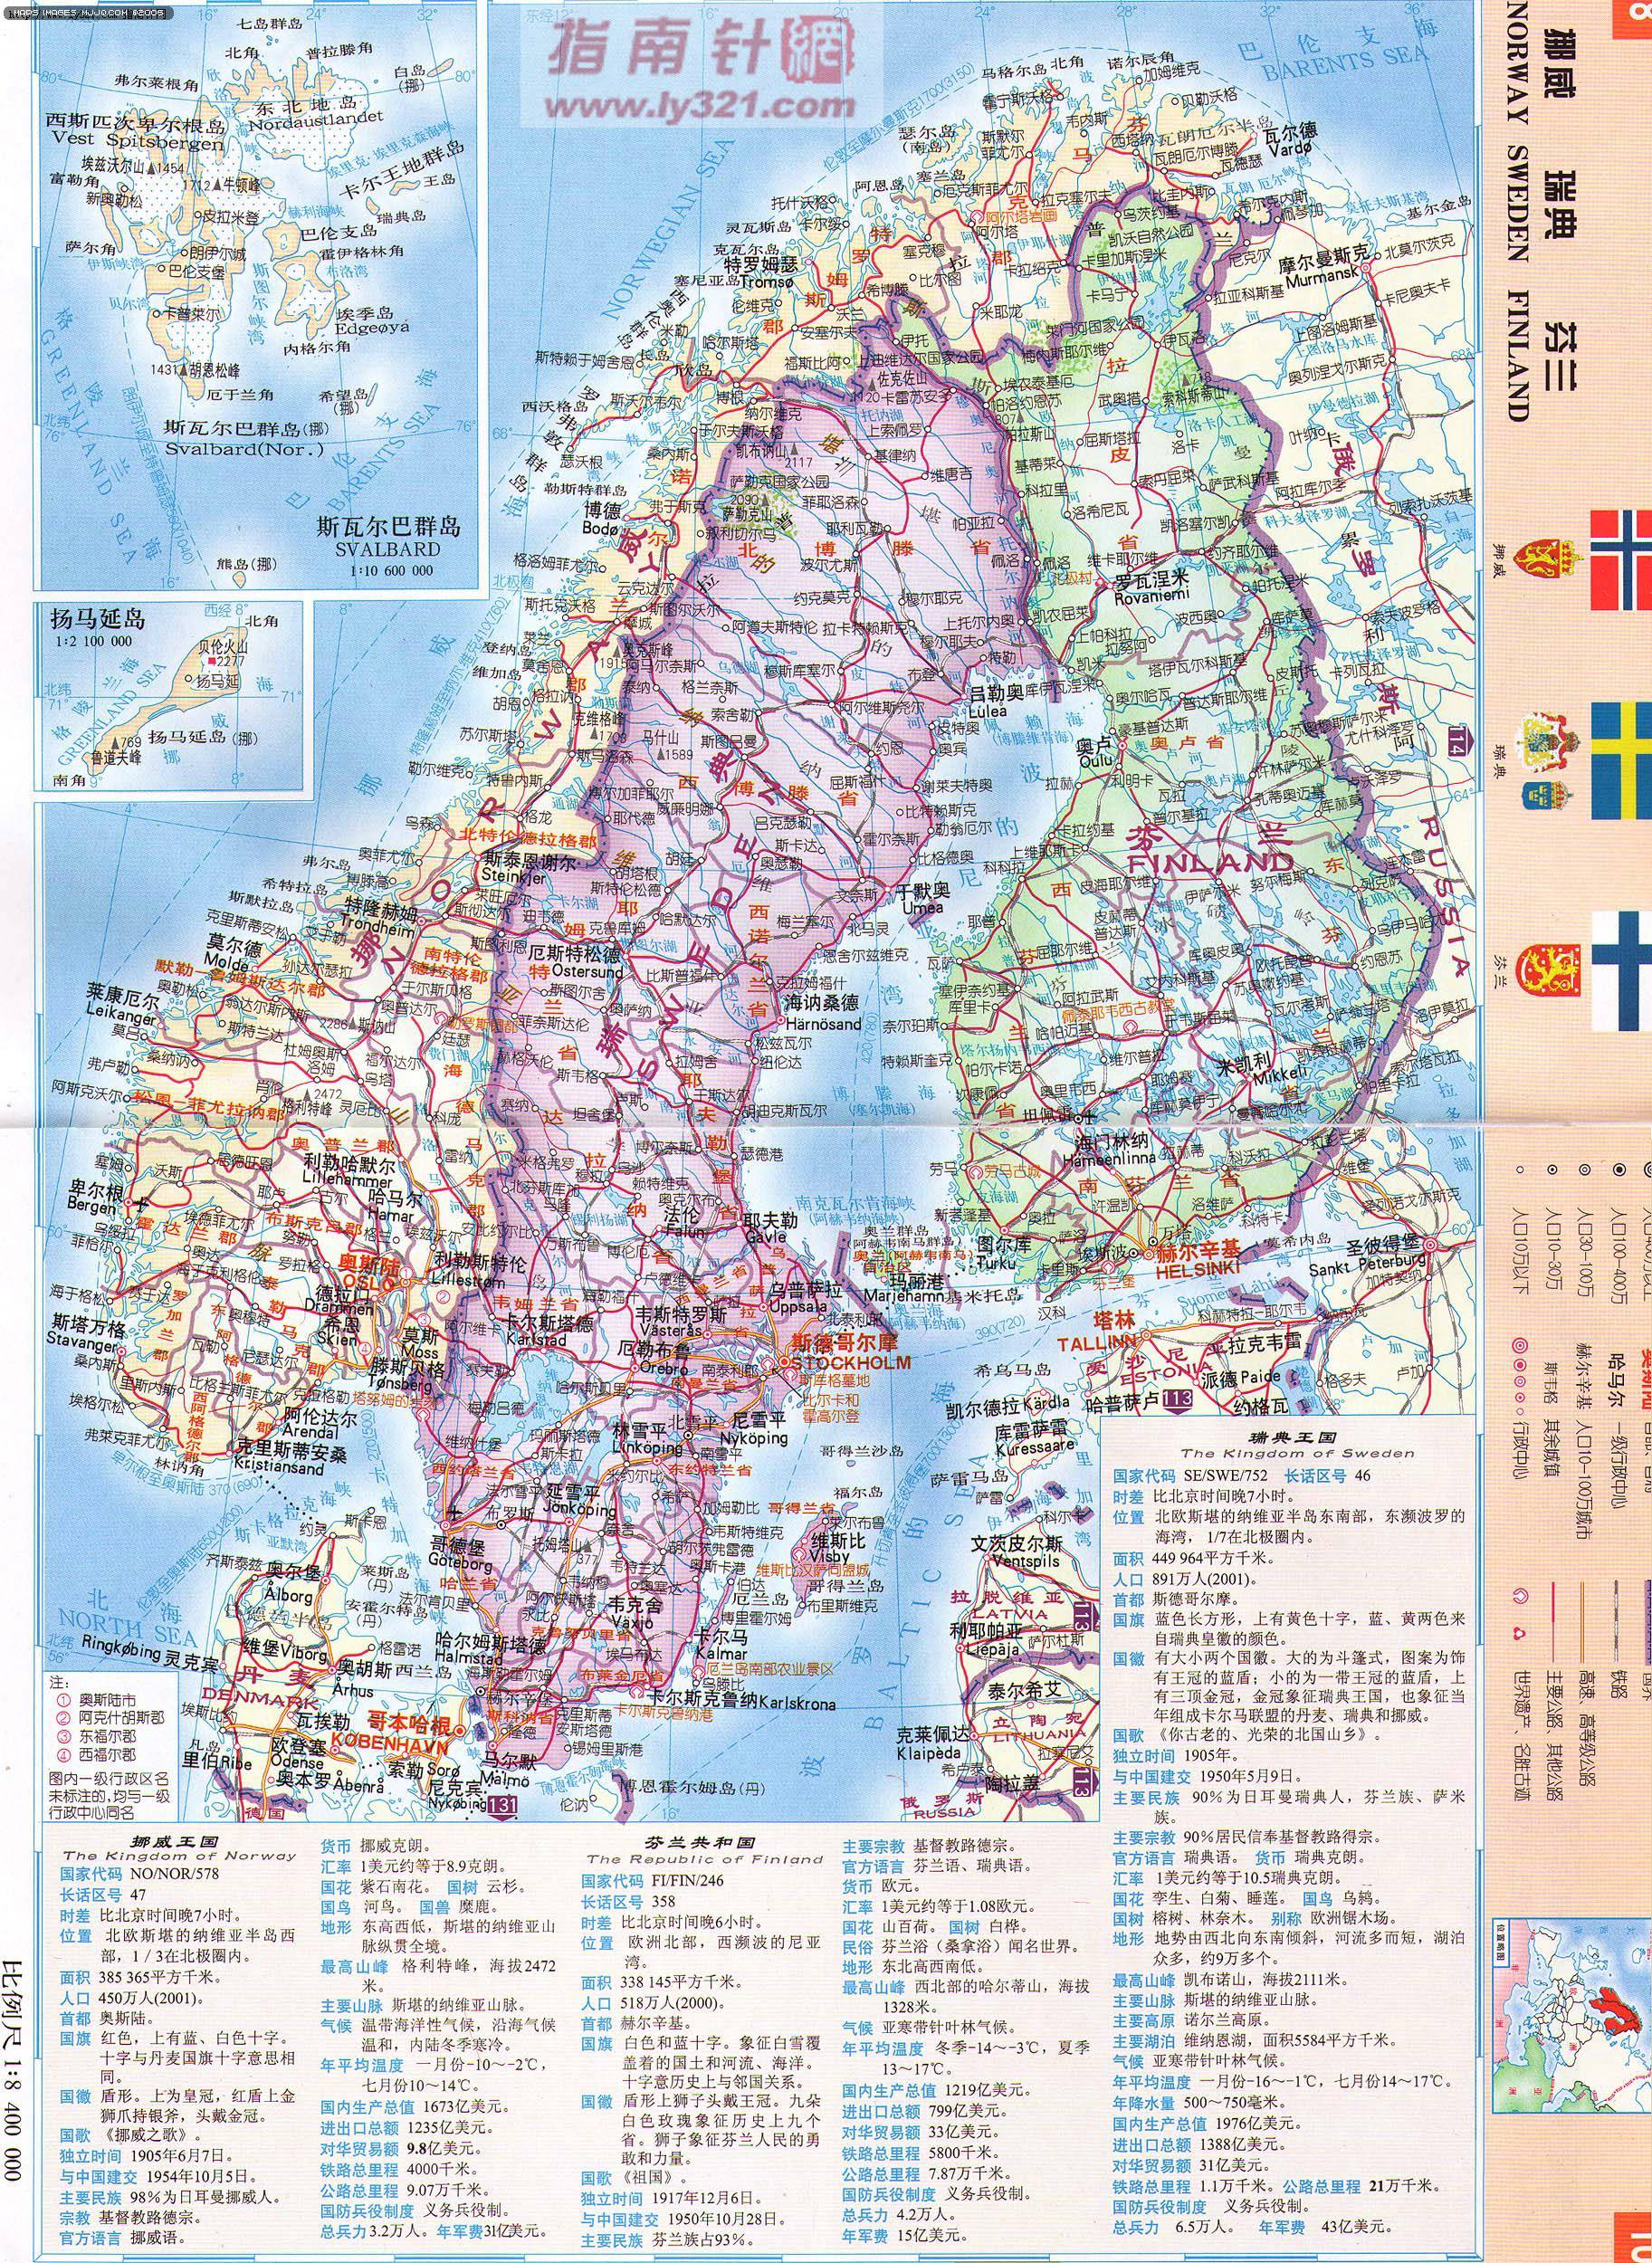 挪威地图 欧洲地图 europe maps 世界地图 美景旅游网图片